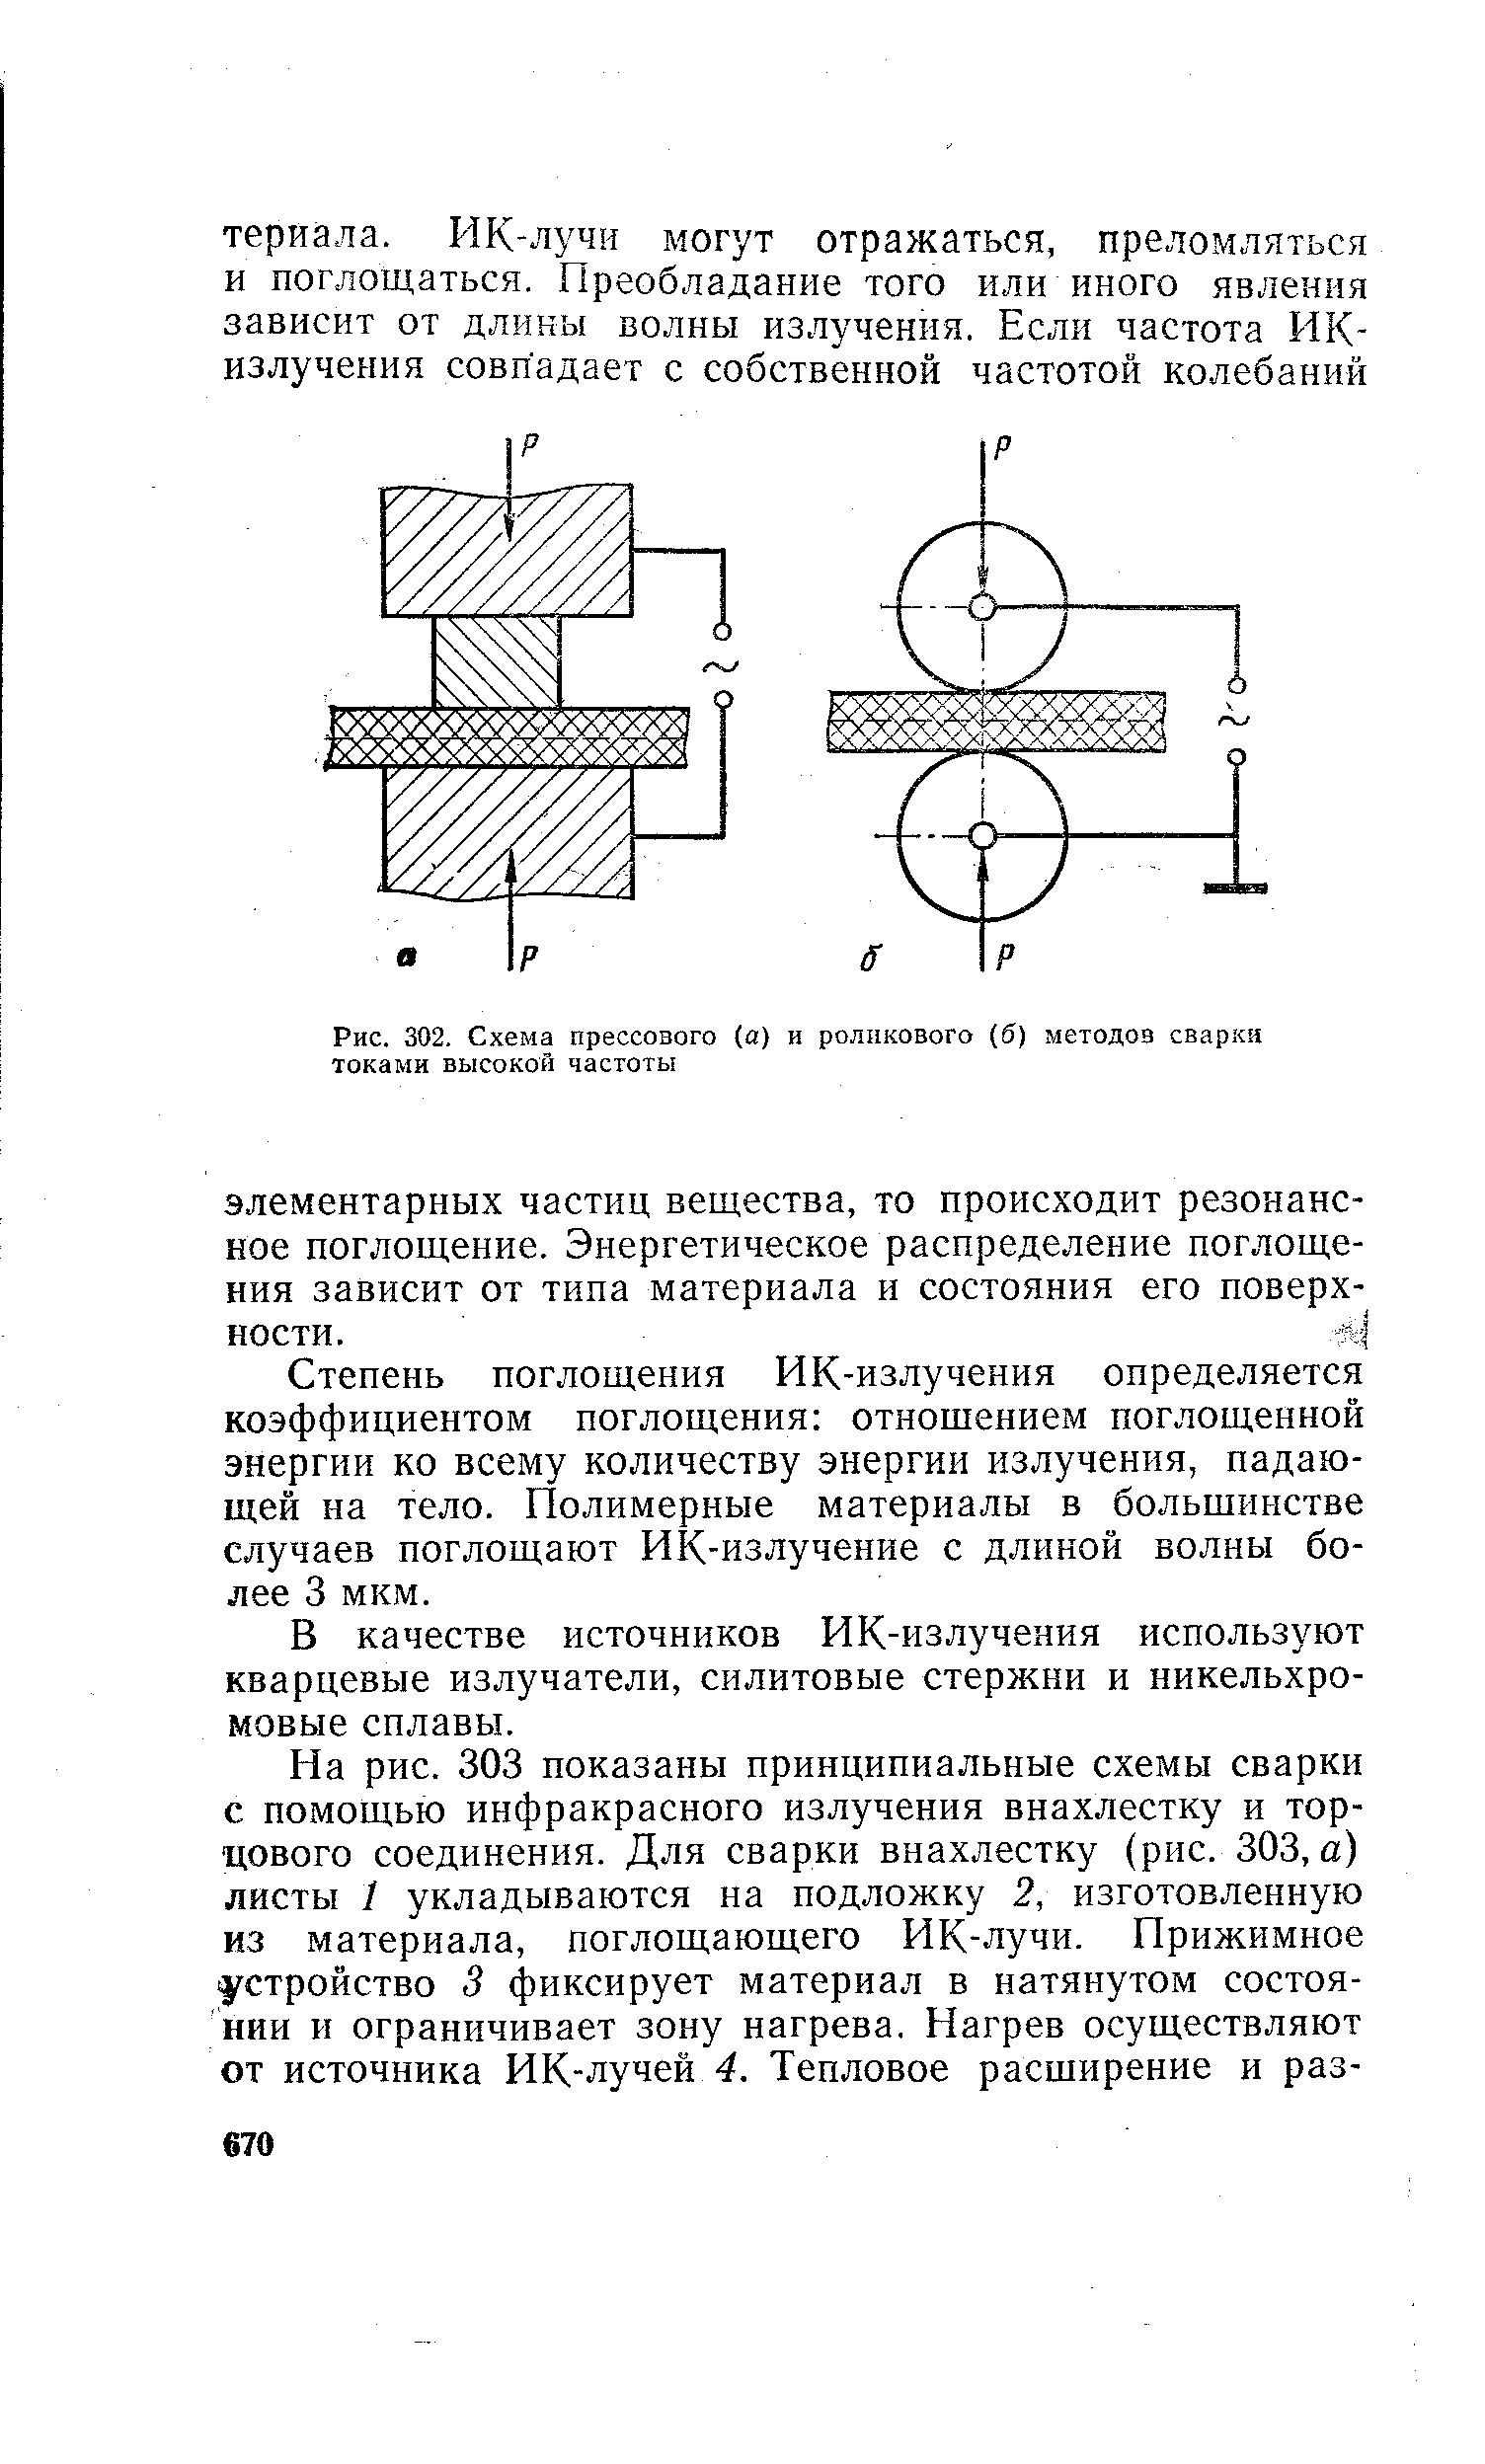 Рис. 302. Схема прессового (а) и роликового (б) методов сварки токами высокой частоты
